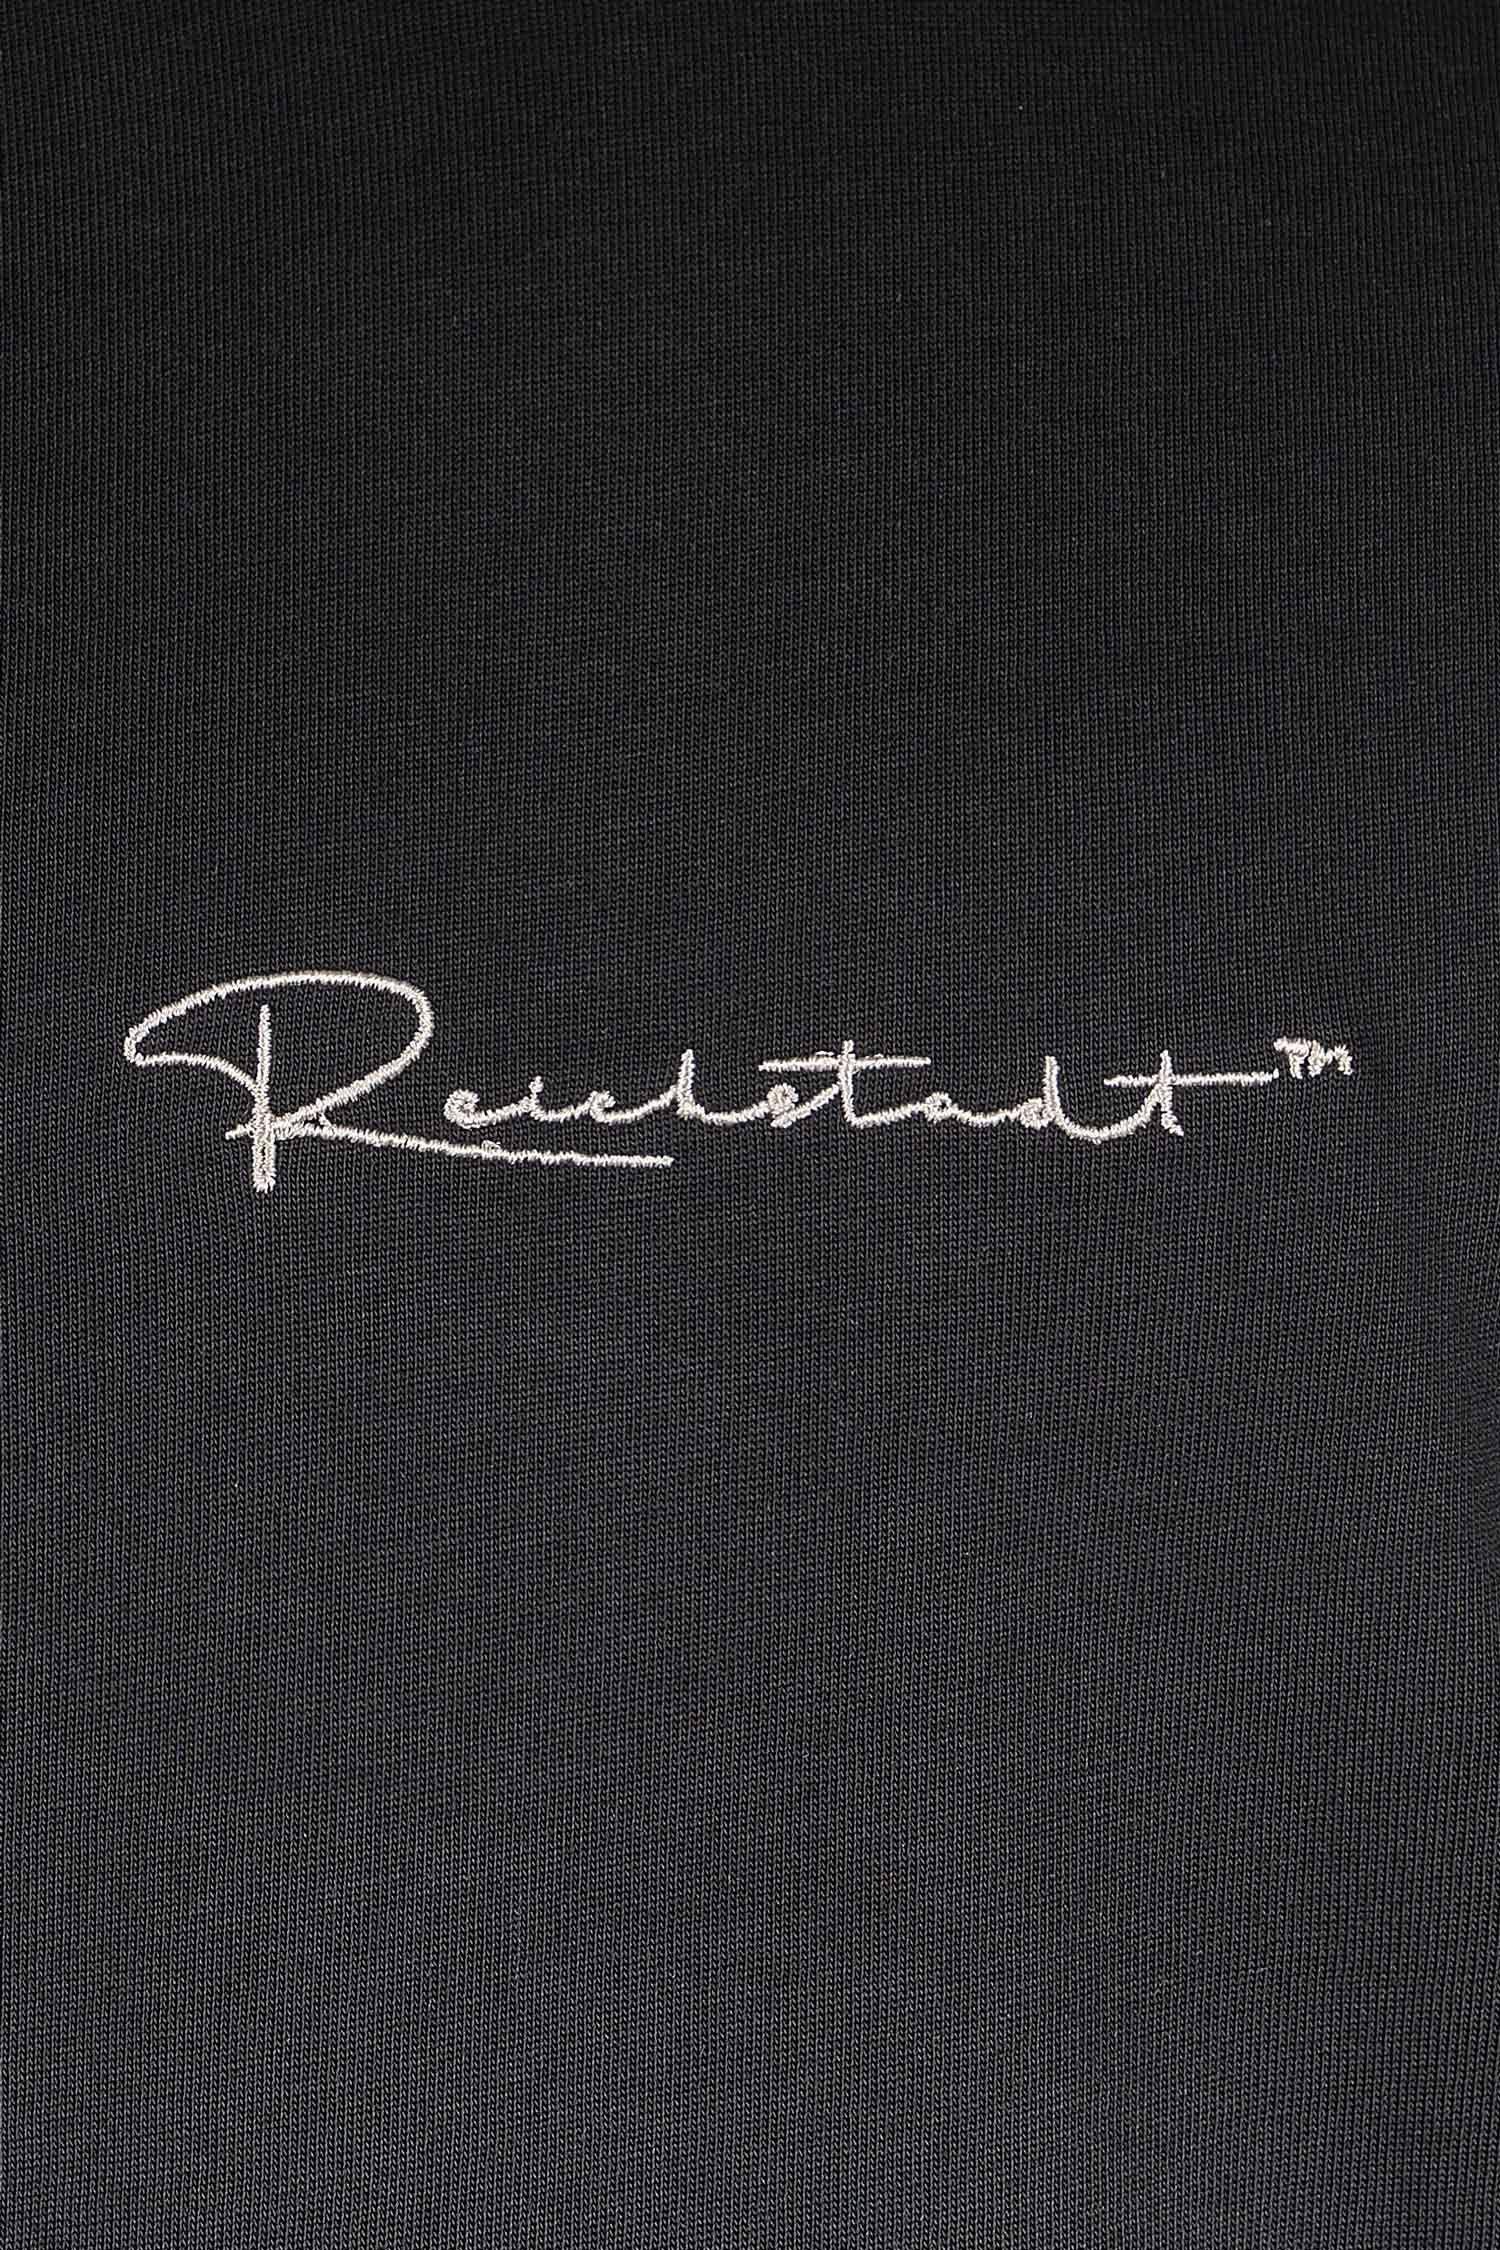 Oversize-Shirt 22RS033 Stitching auf Brust der schwarz Reichstadt mit T-shirt (1-tlg) Casual